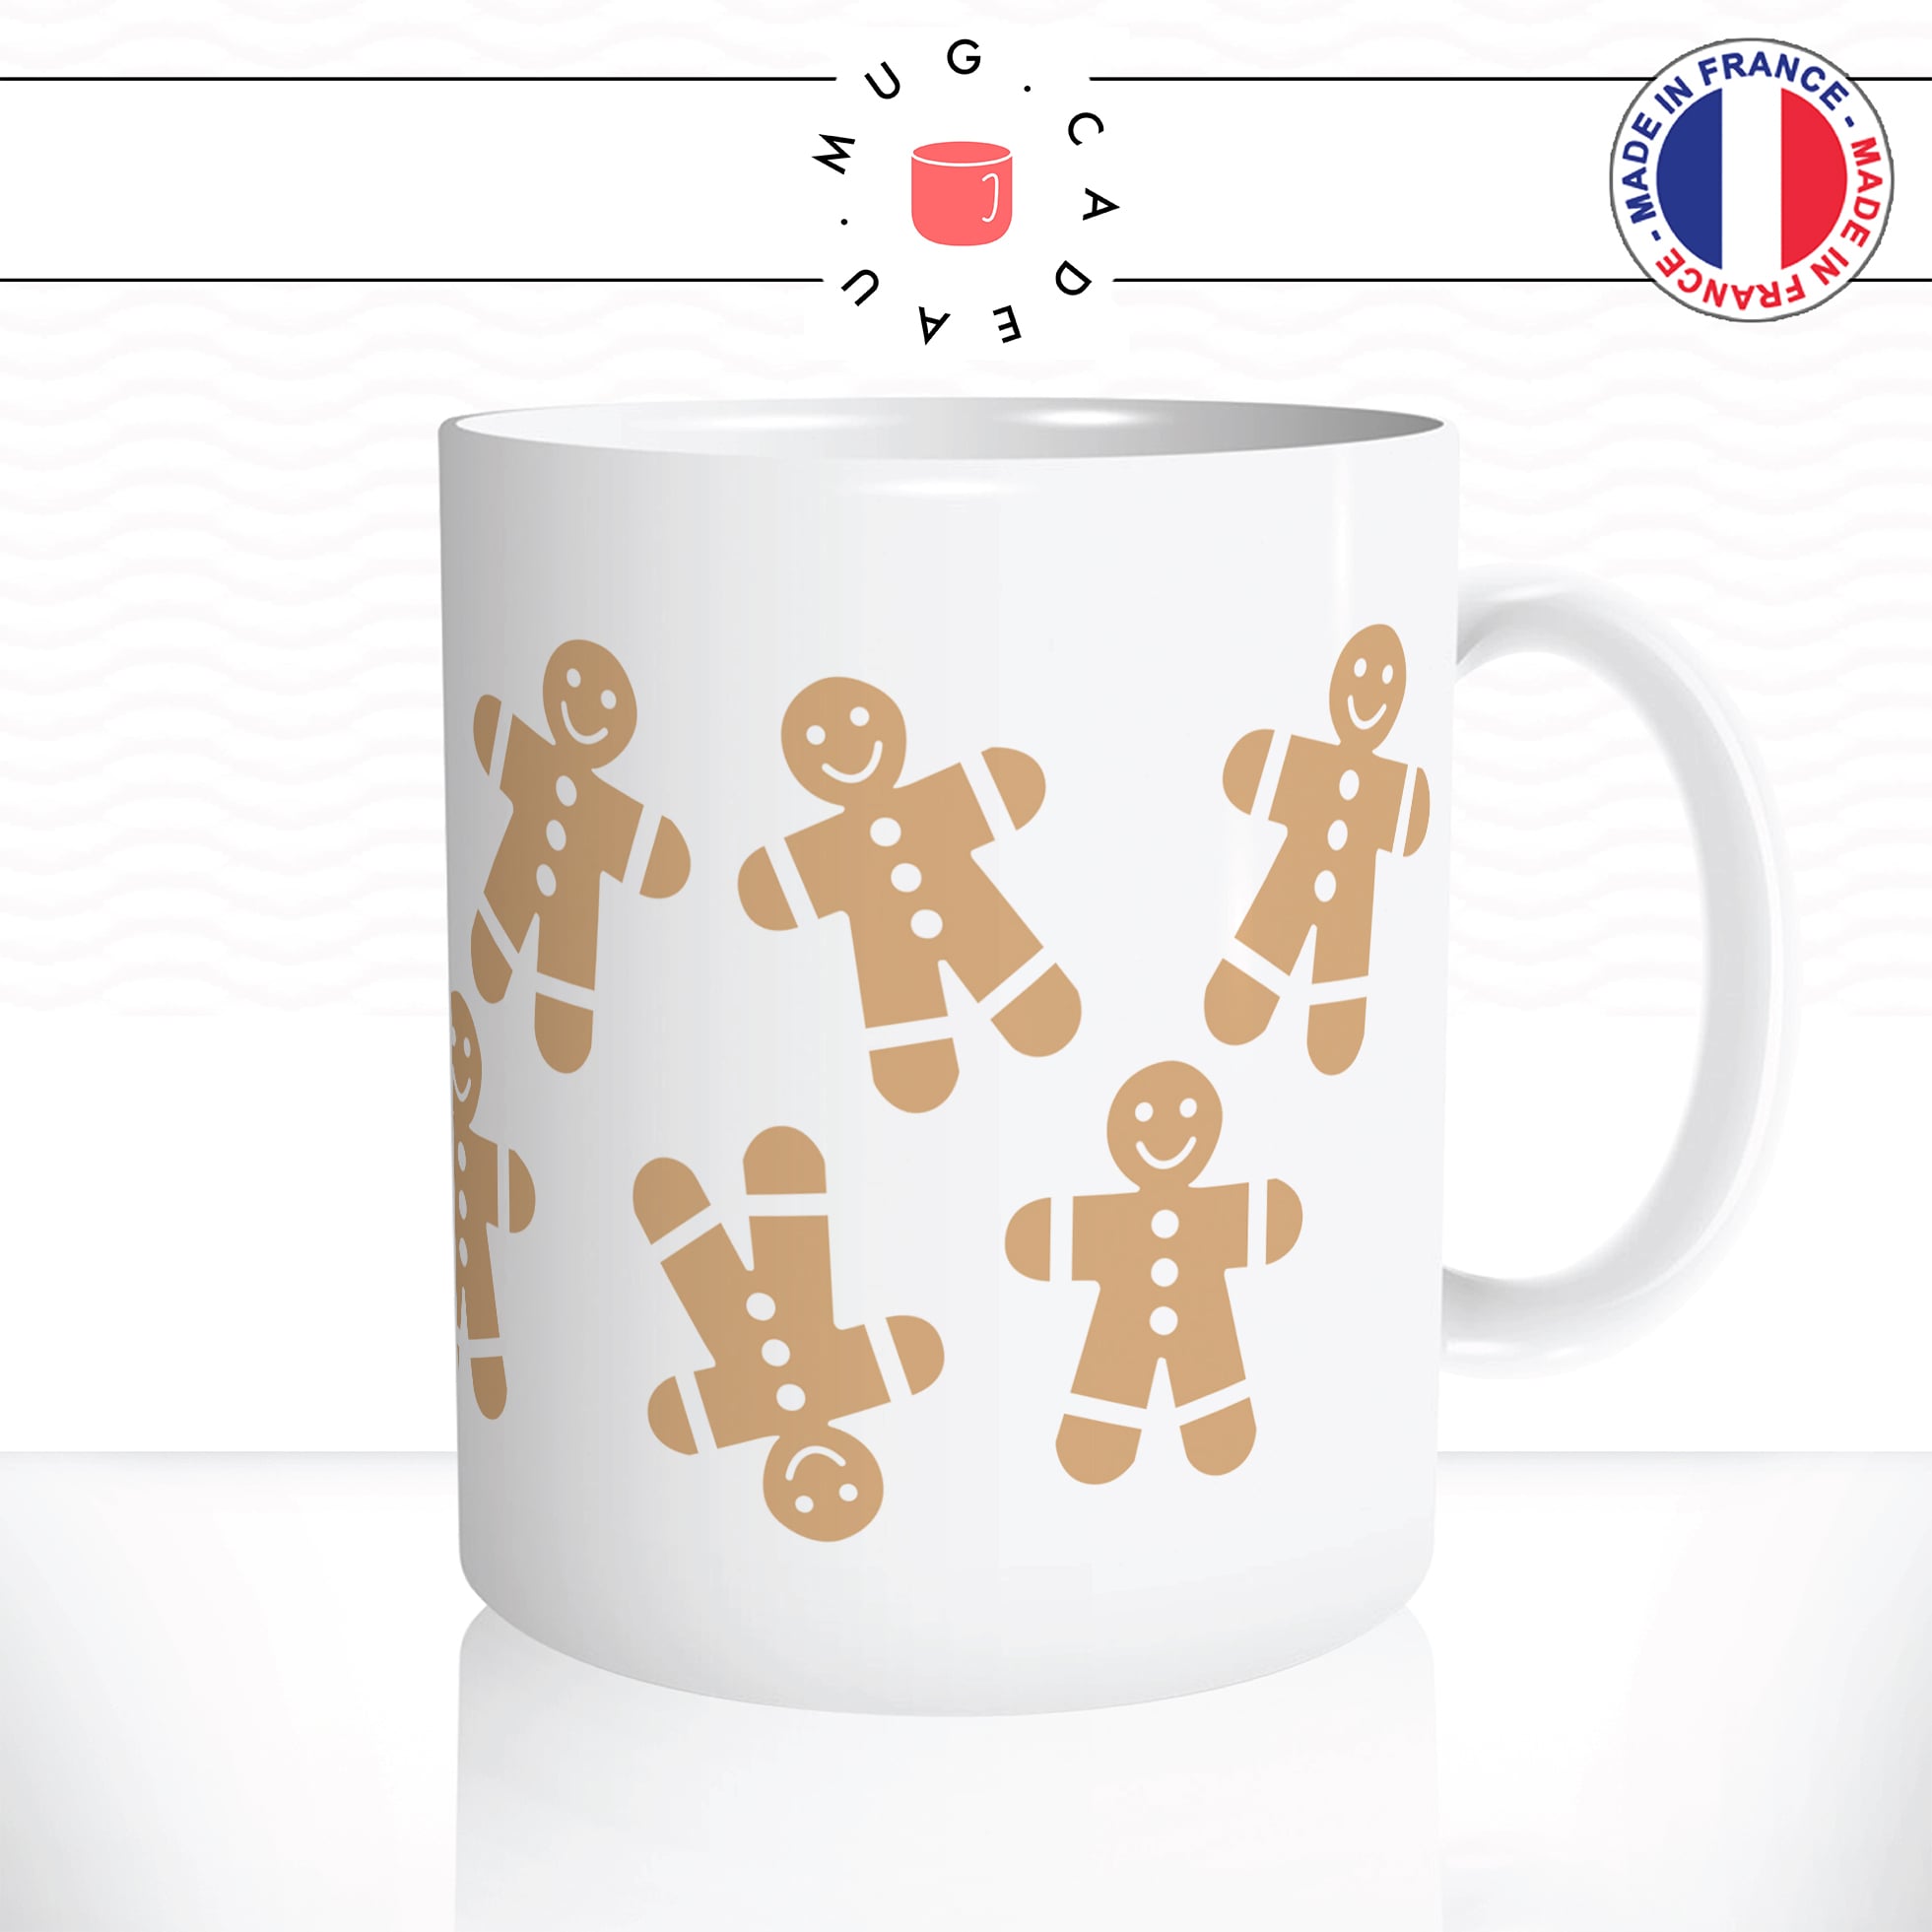 mug-tasse-ginger-bread-man-petit-biscuit-noel-christmas-mignon-gentil-café-thé-idée-cadeau-original-personnalisable2-min